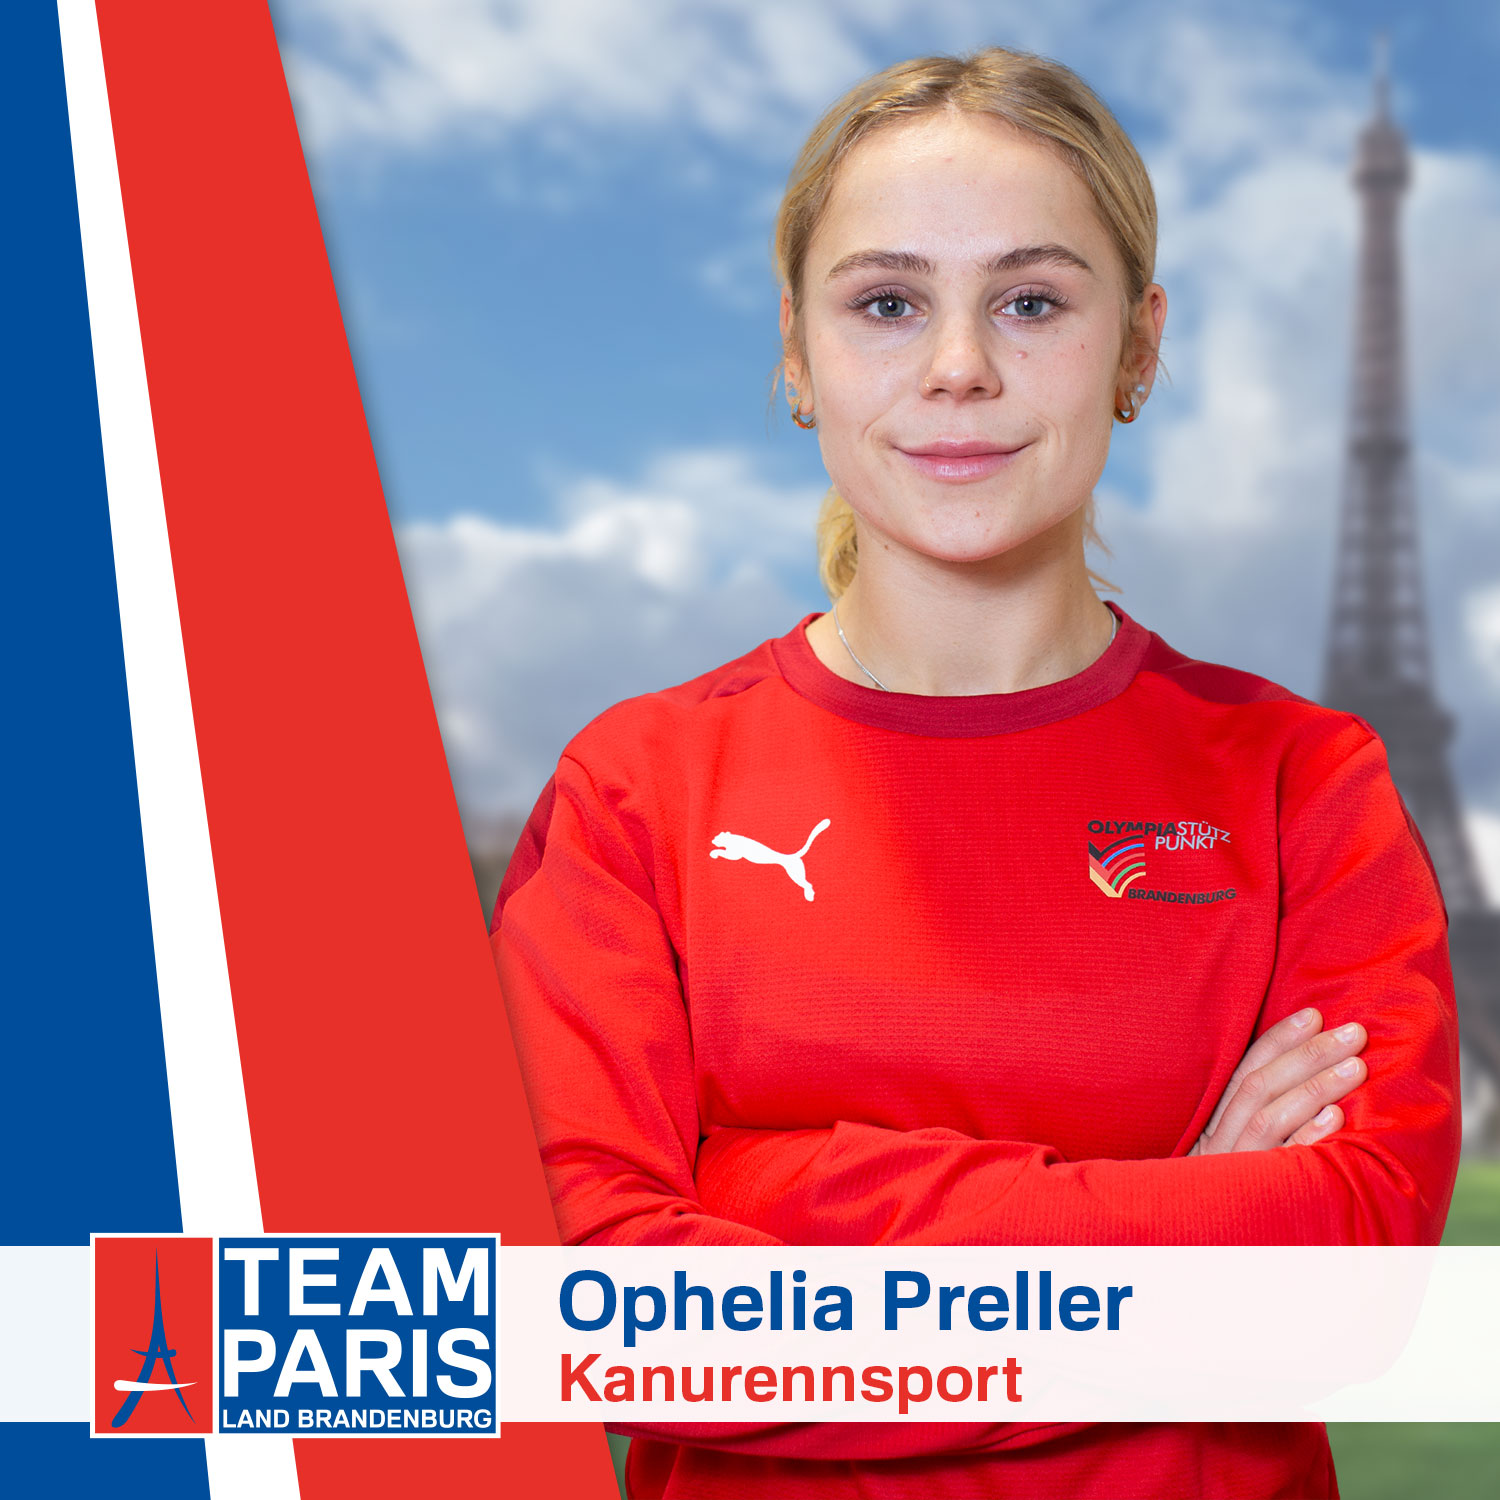 Ophelia Preller